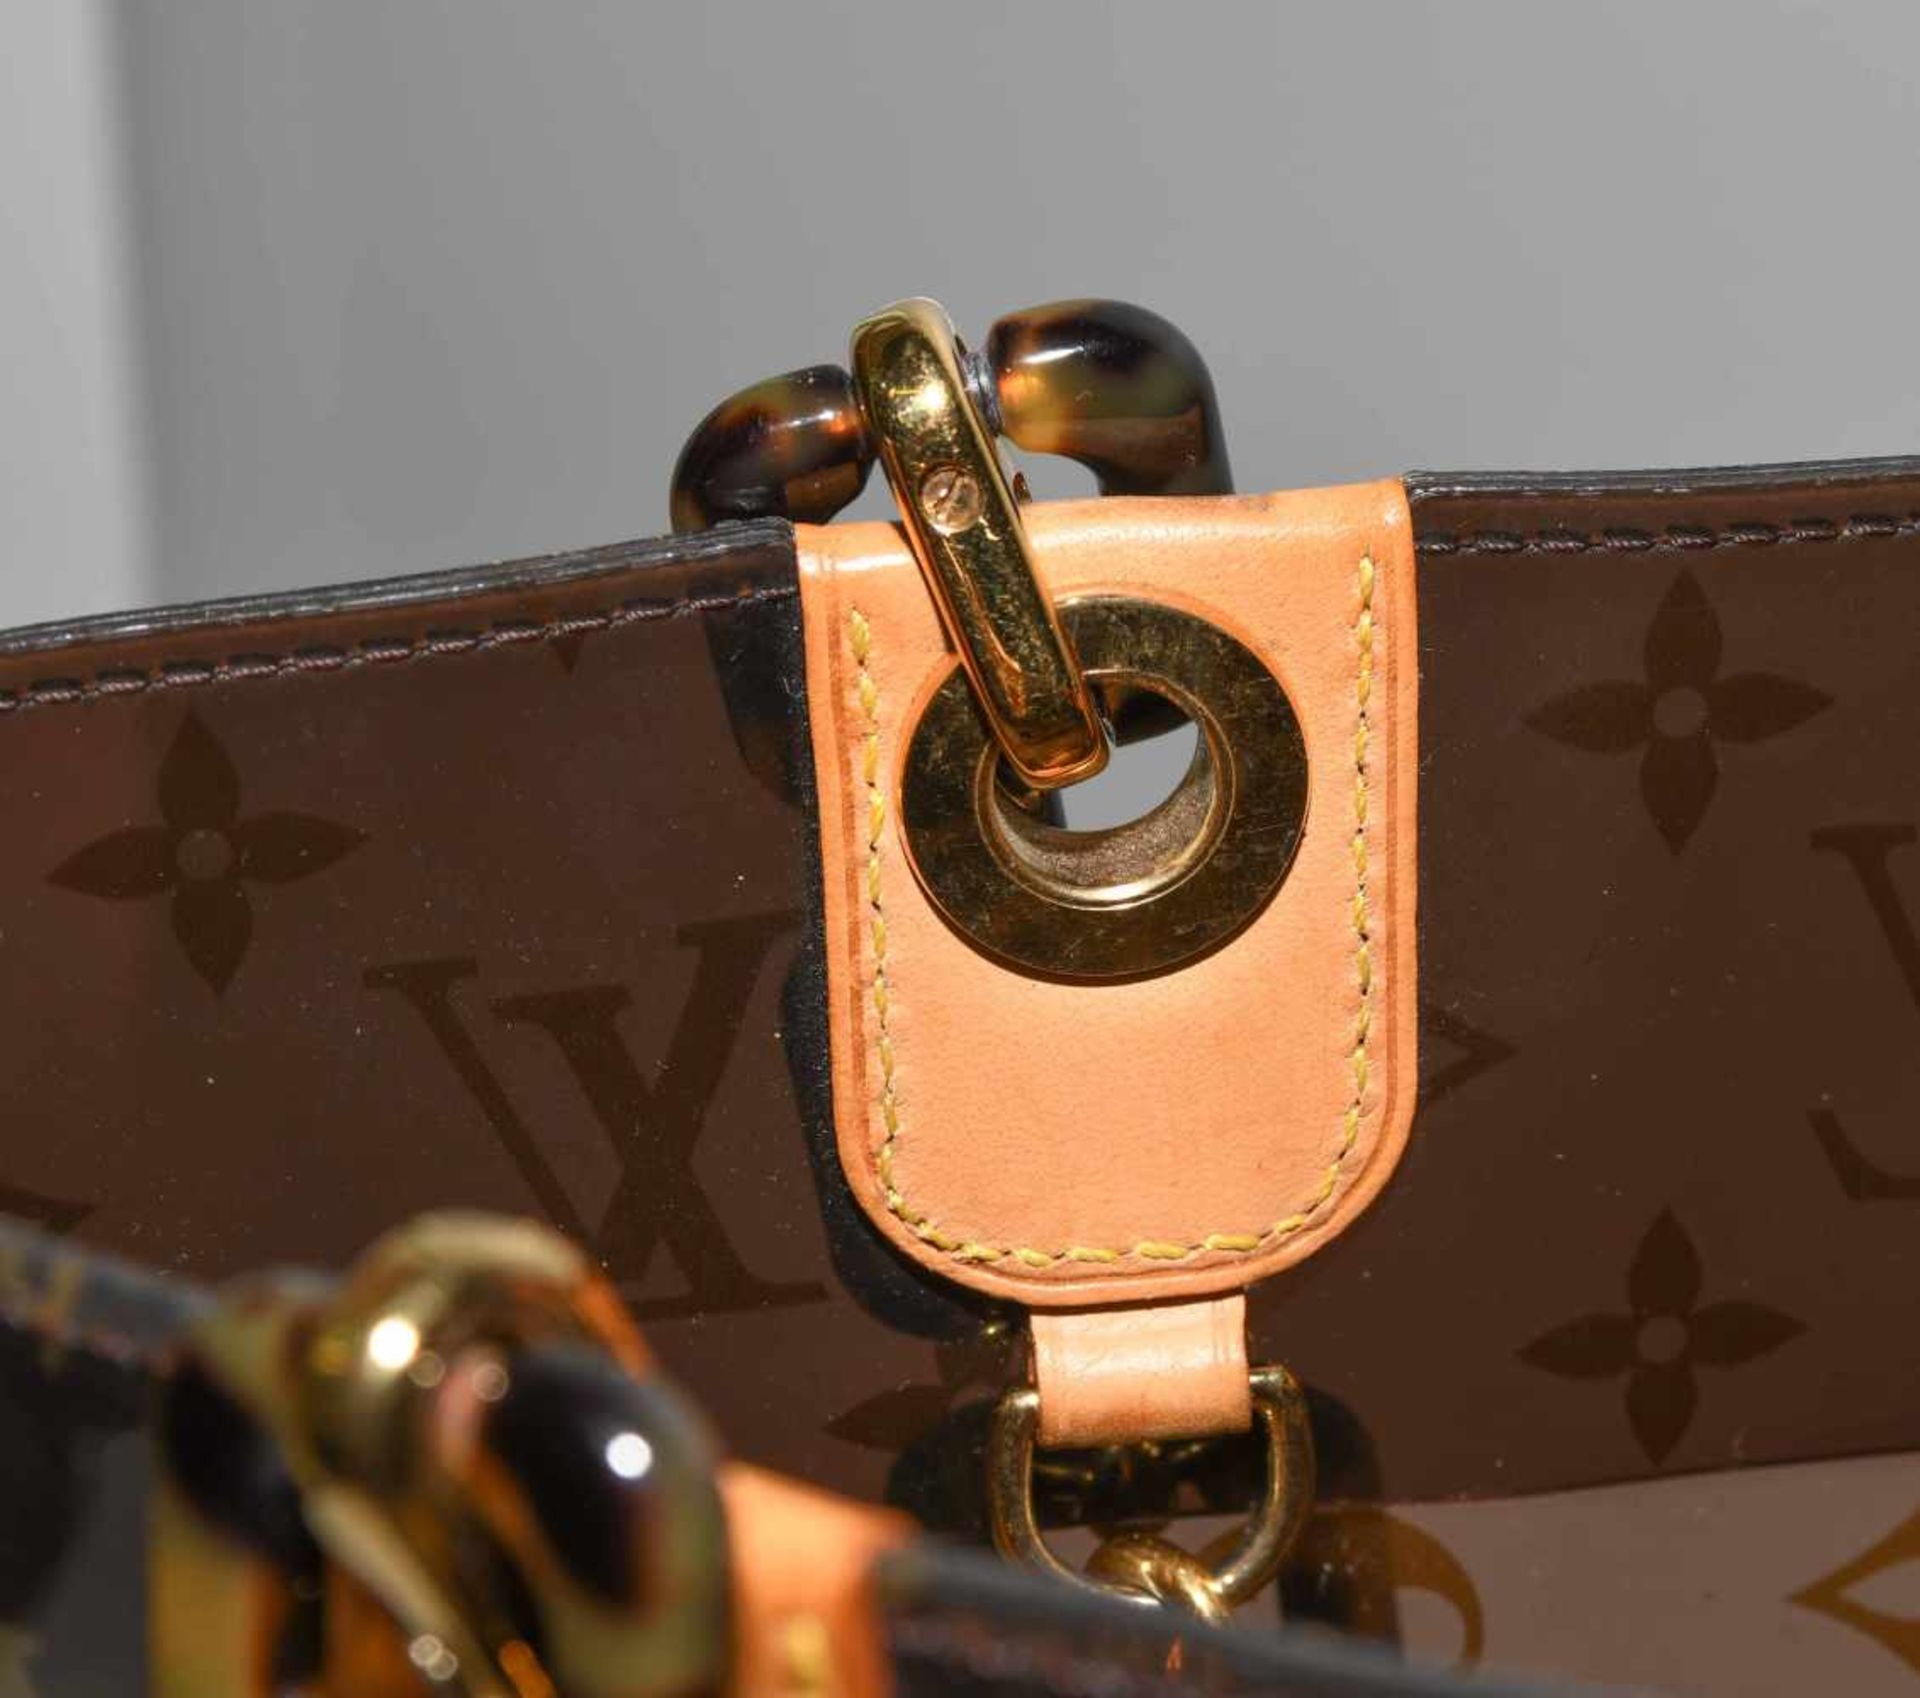 Louis Vuitton, "Ambre sac cabas"Schultertasche aus braunem Vinyl mit klassischem Monogram Muster. - Bild 5 aus 17